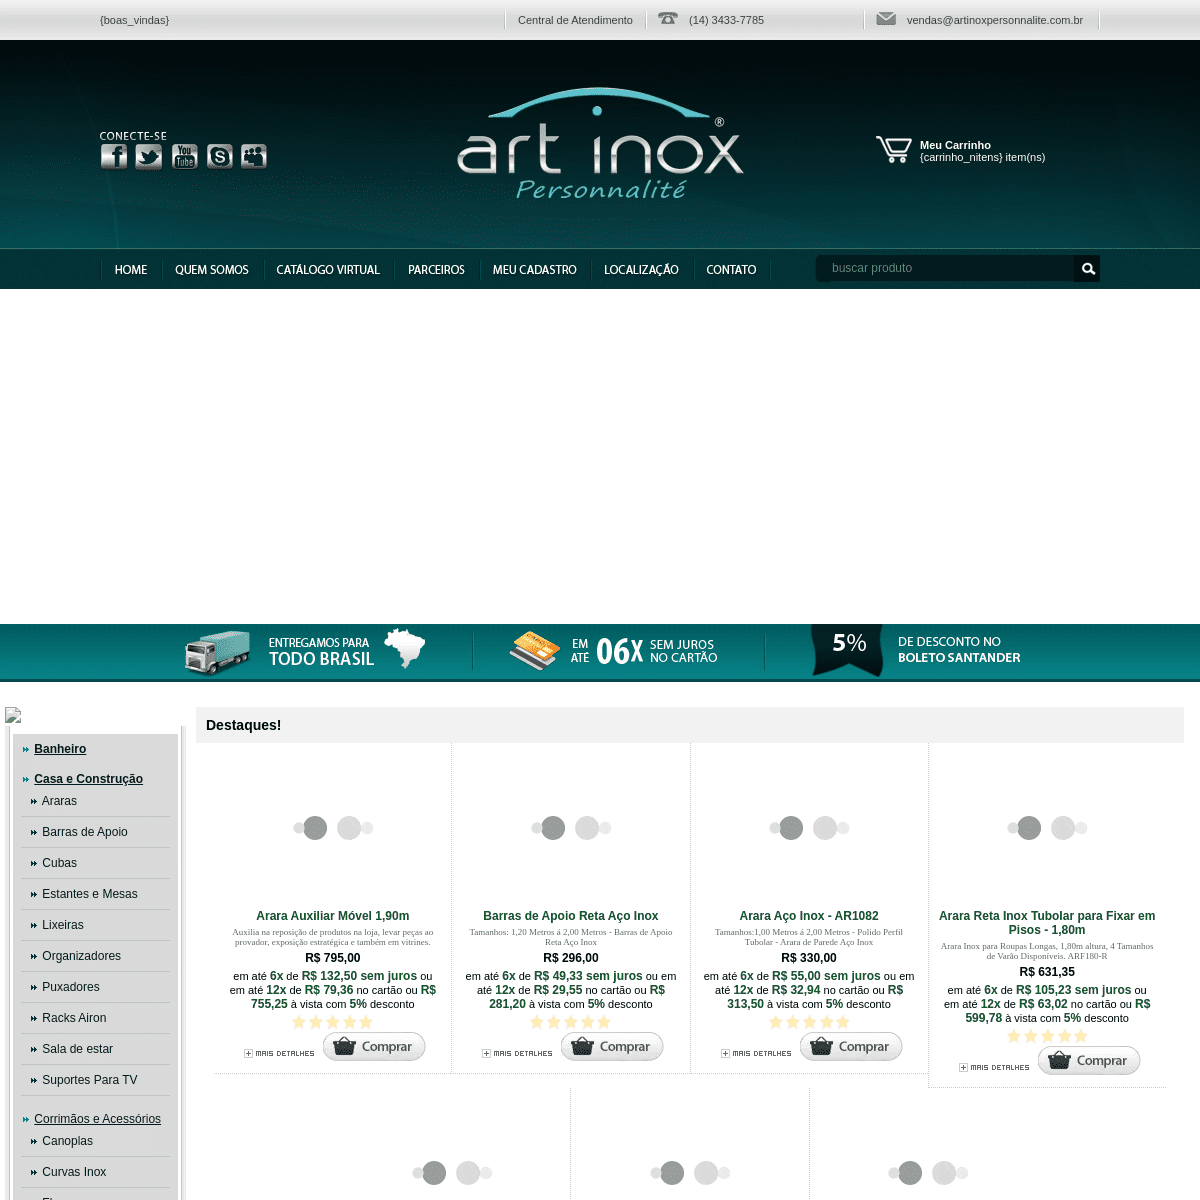 A complete backup of artinoxloja.com.br